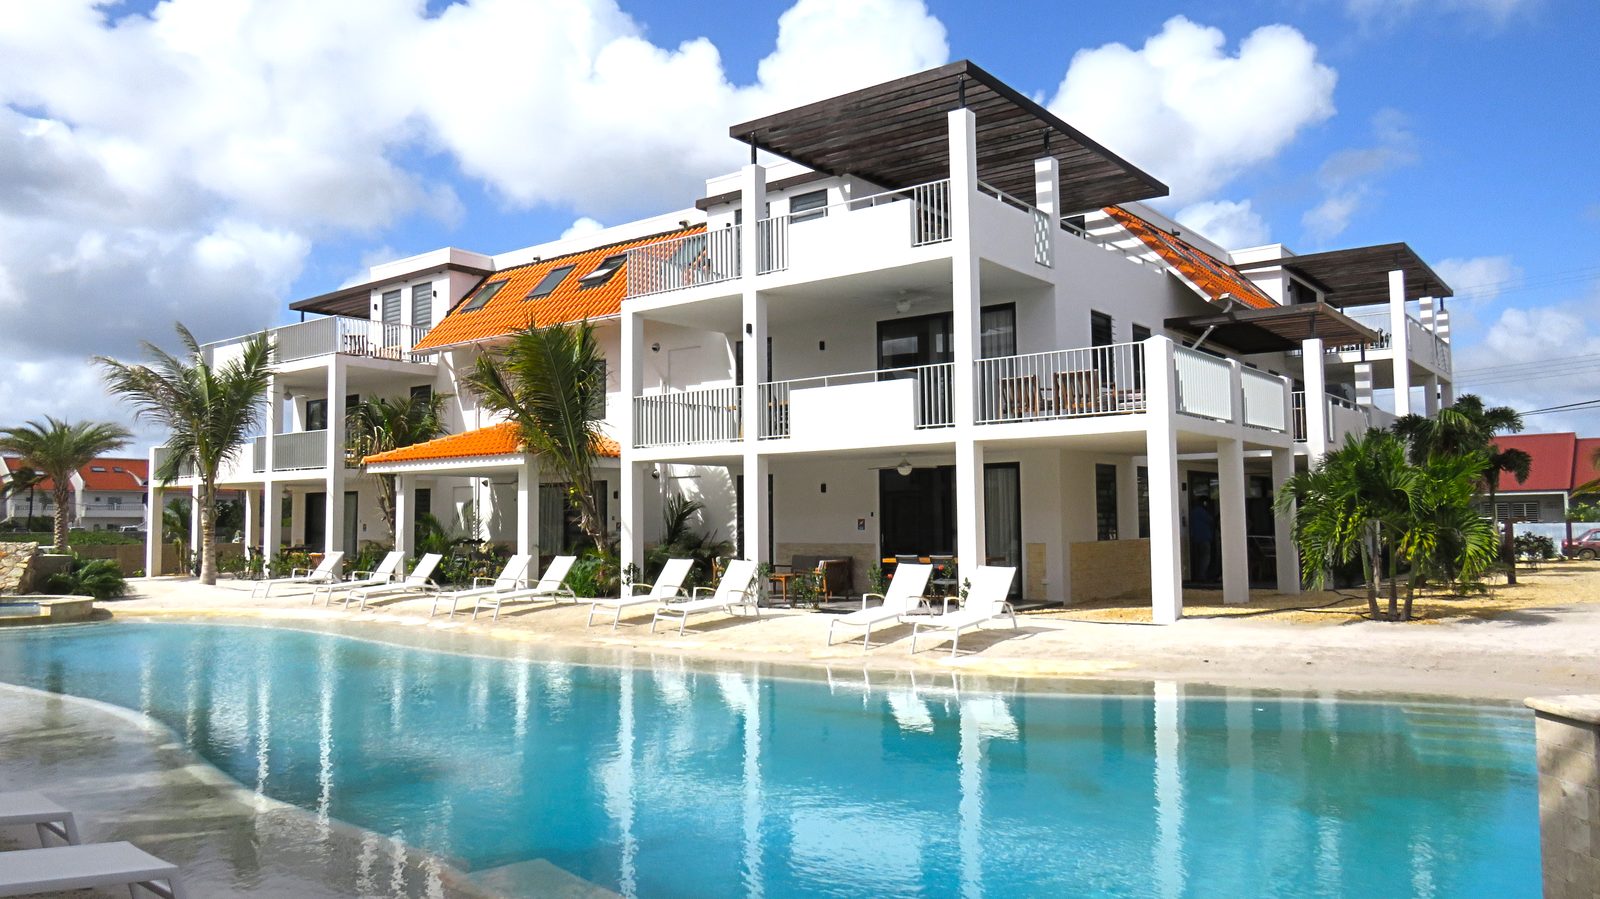 Een verblijf op Bonaire gezocht? Kies dan voor Resort Bonaire. Een nieuw, luxe resort met appartementen, voorzien zijn van alle benodigdheden.